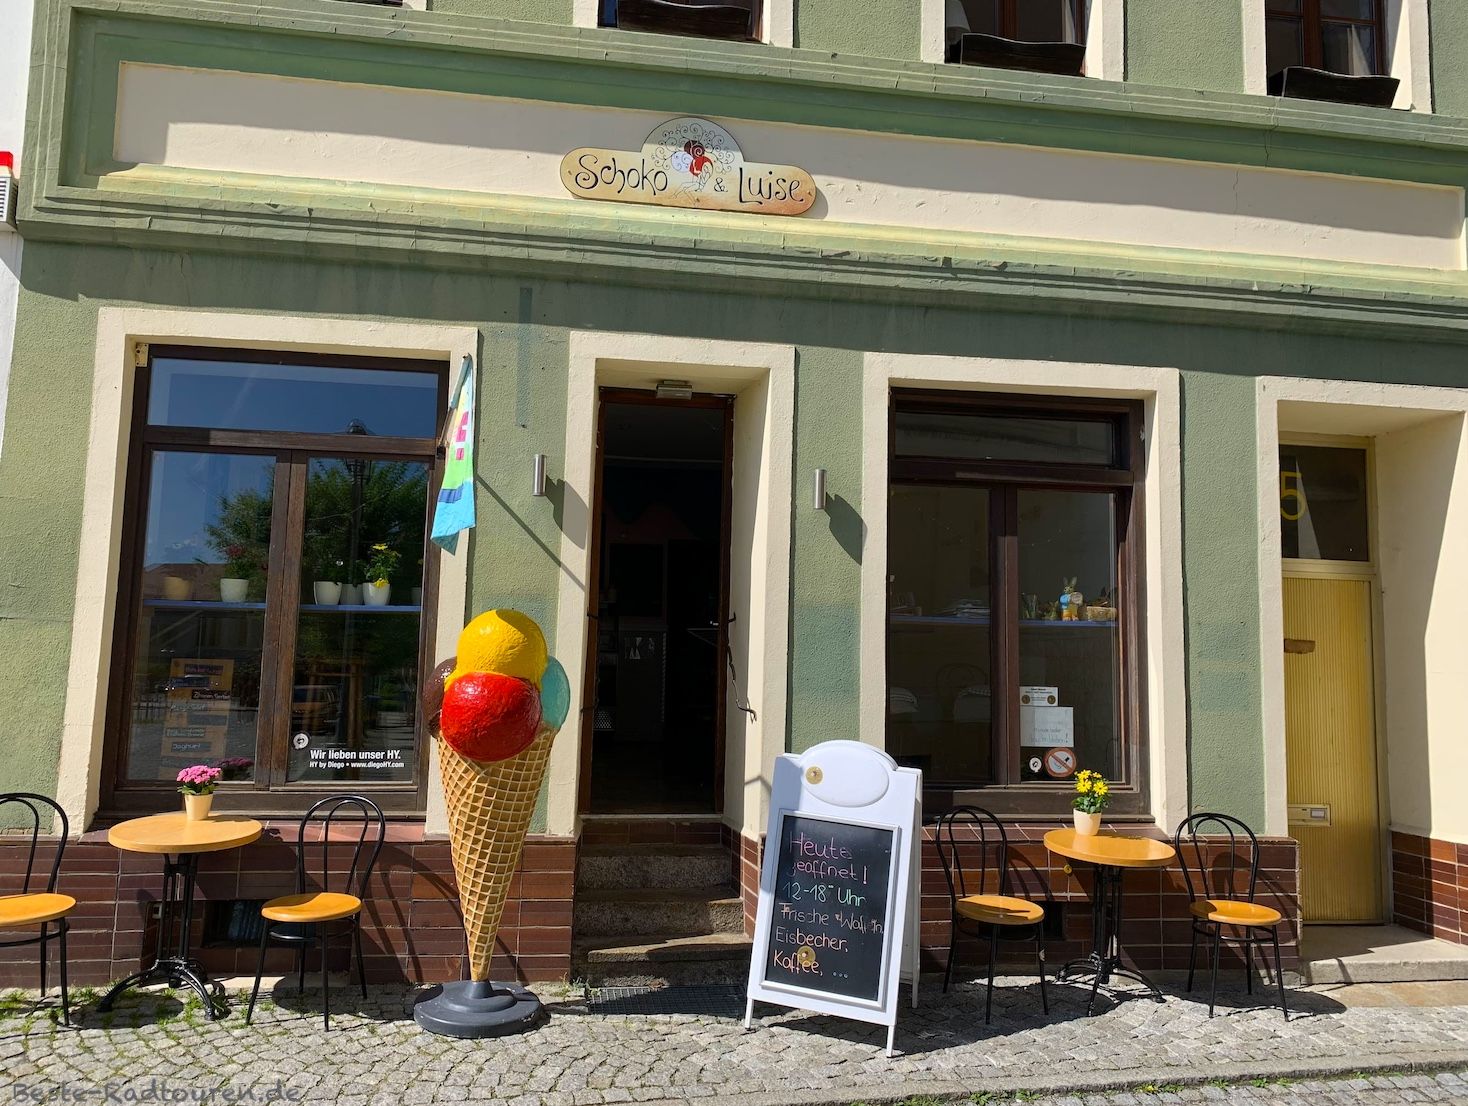 Foto vom Marktplatz aus: Eiscafe / Eisdiele Schoko & Luise in Hoyerswerda